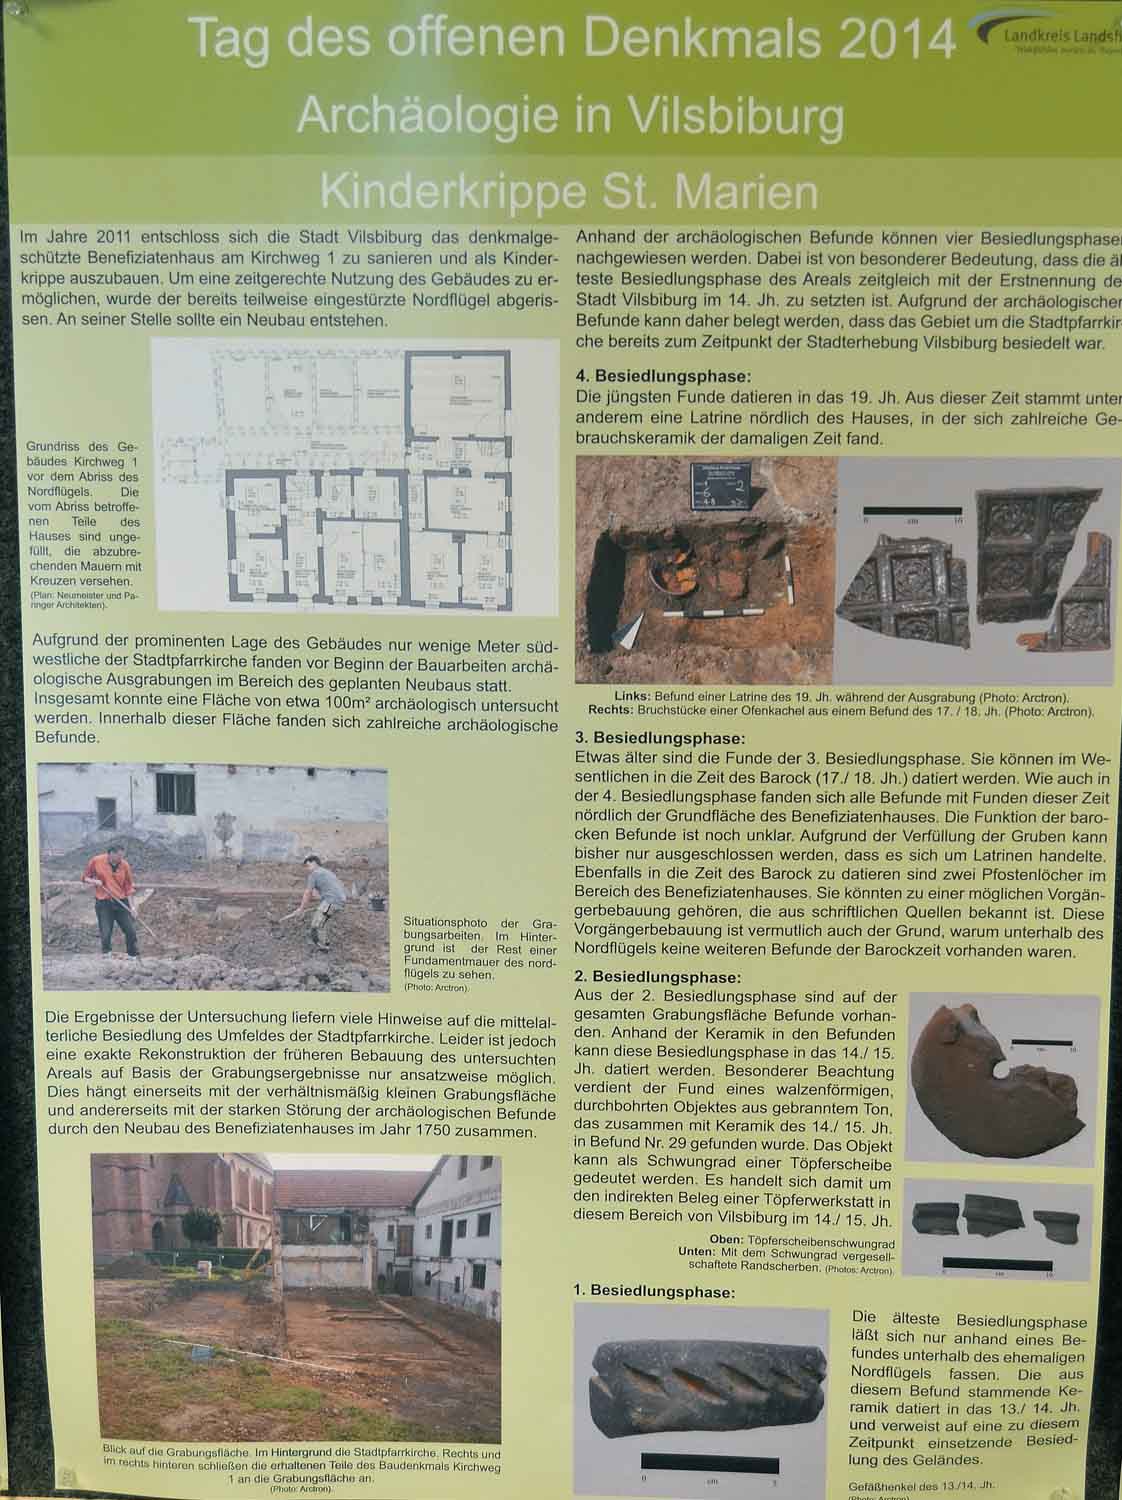 Die Ausgrabungen rund um das alte Benifizatenhaus der Weberstiftung sind in Schaubildern dokumentiert.